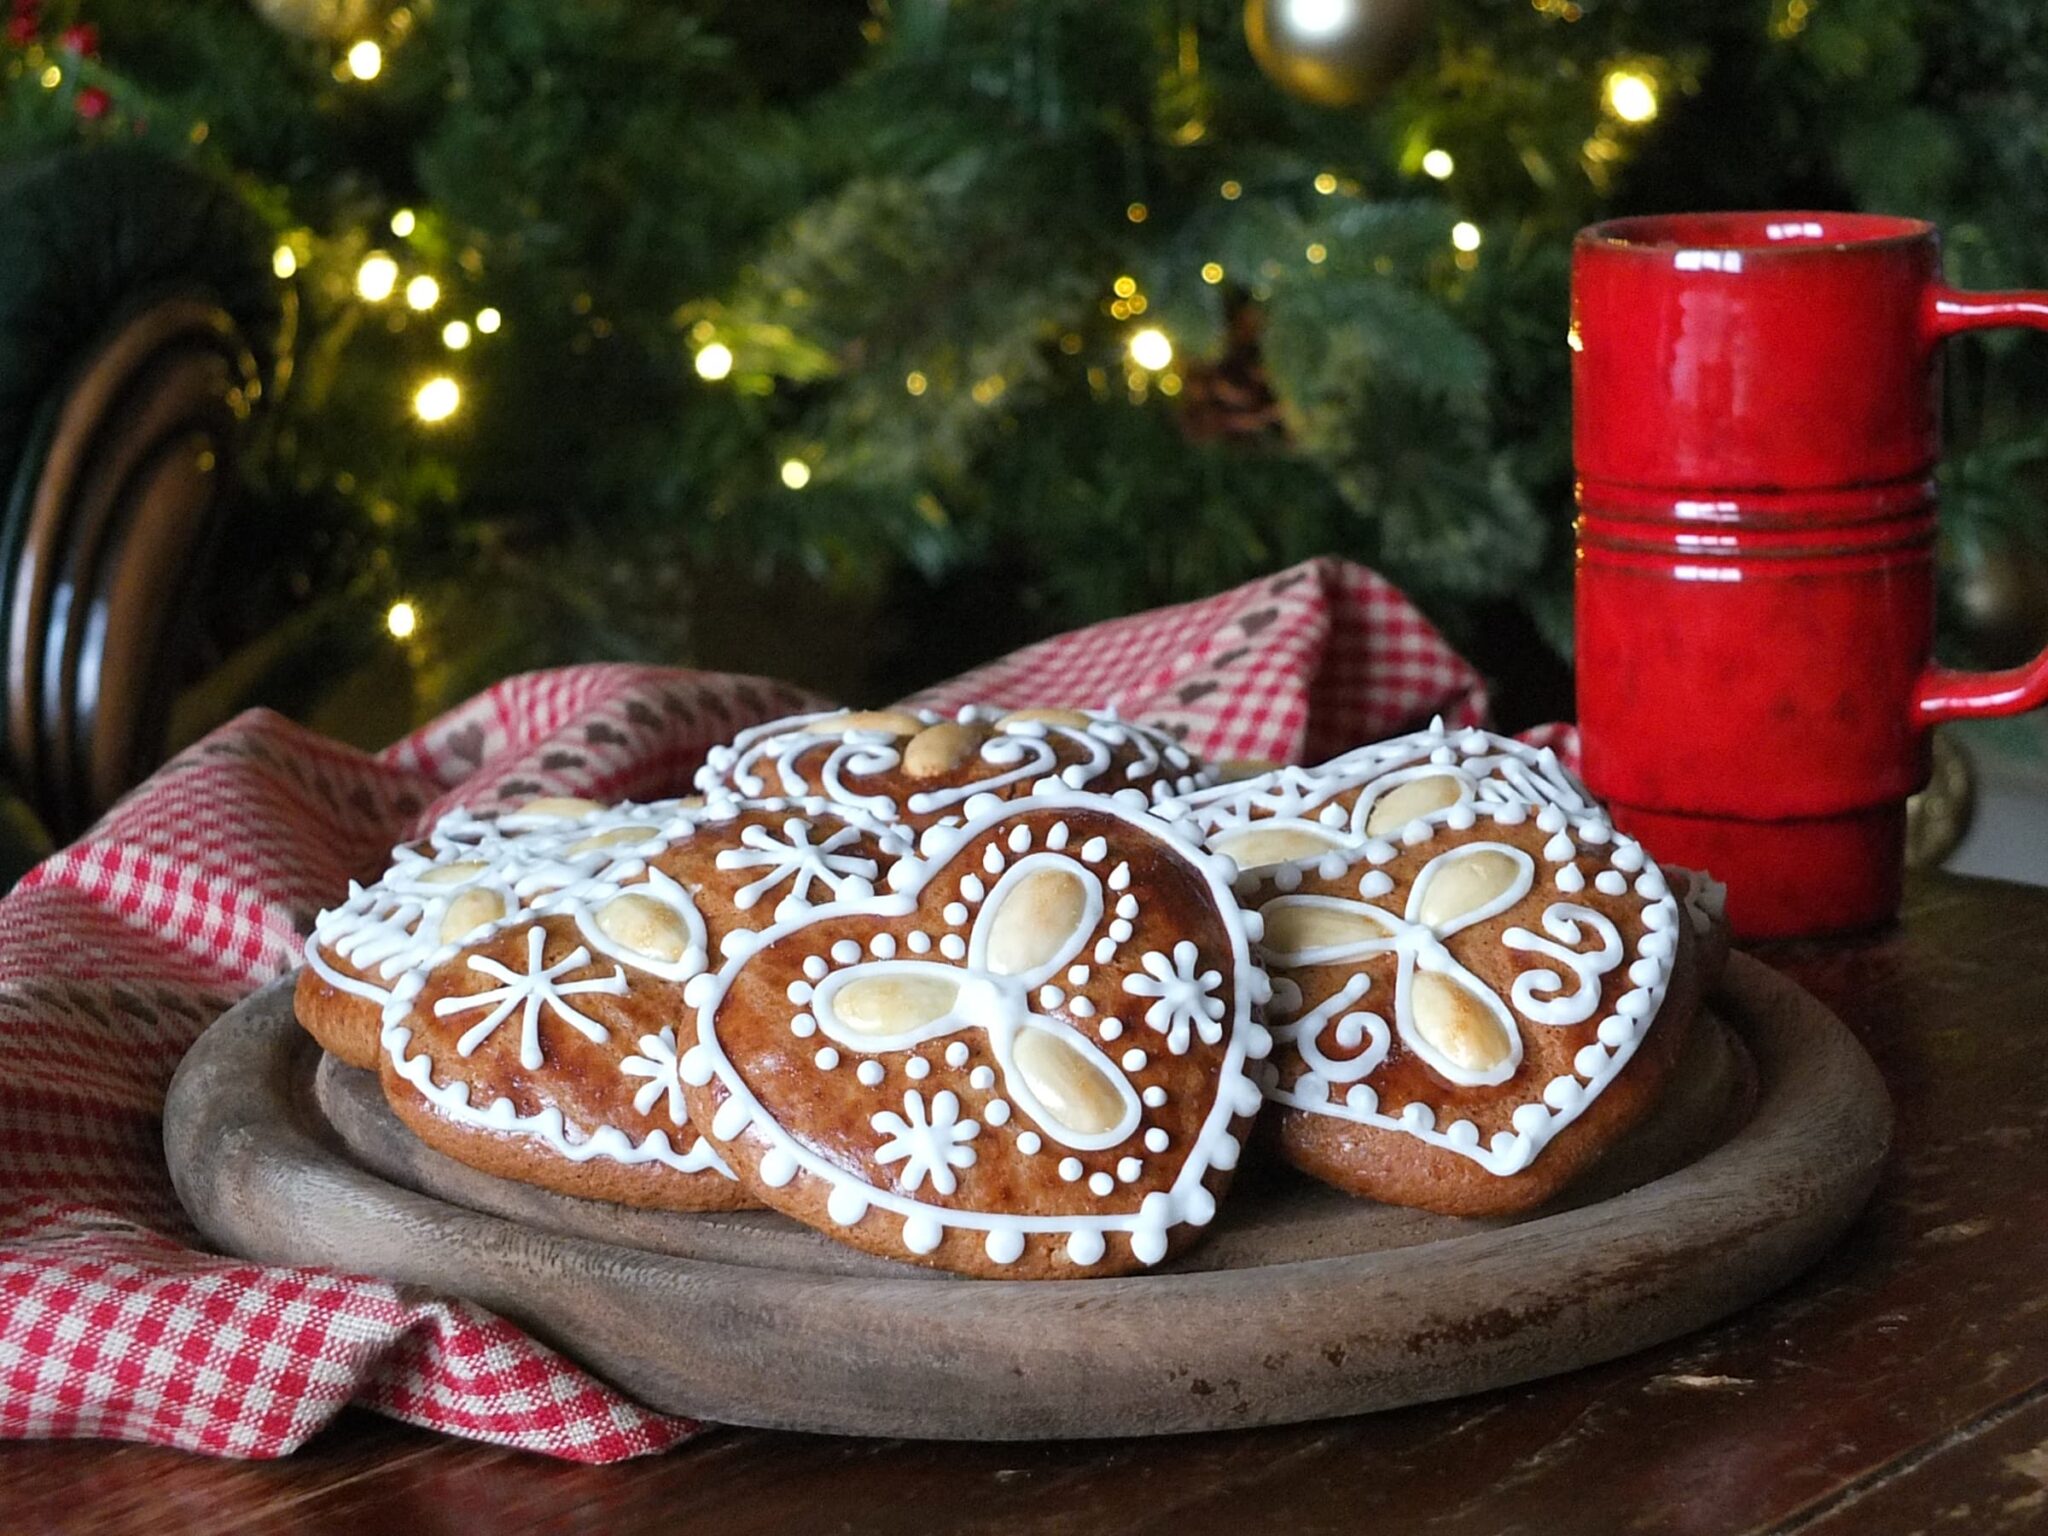 Medovníky: a Slovak Spiced Honey Cookie Recipe - Elizabeth's Kitchen Diary